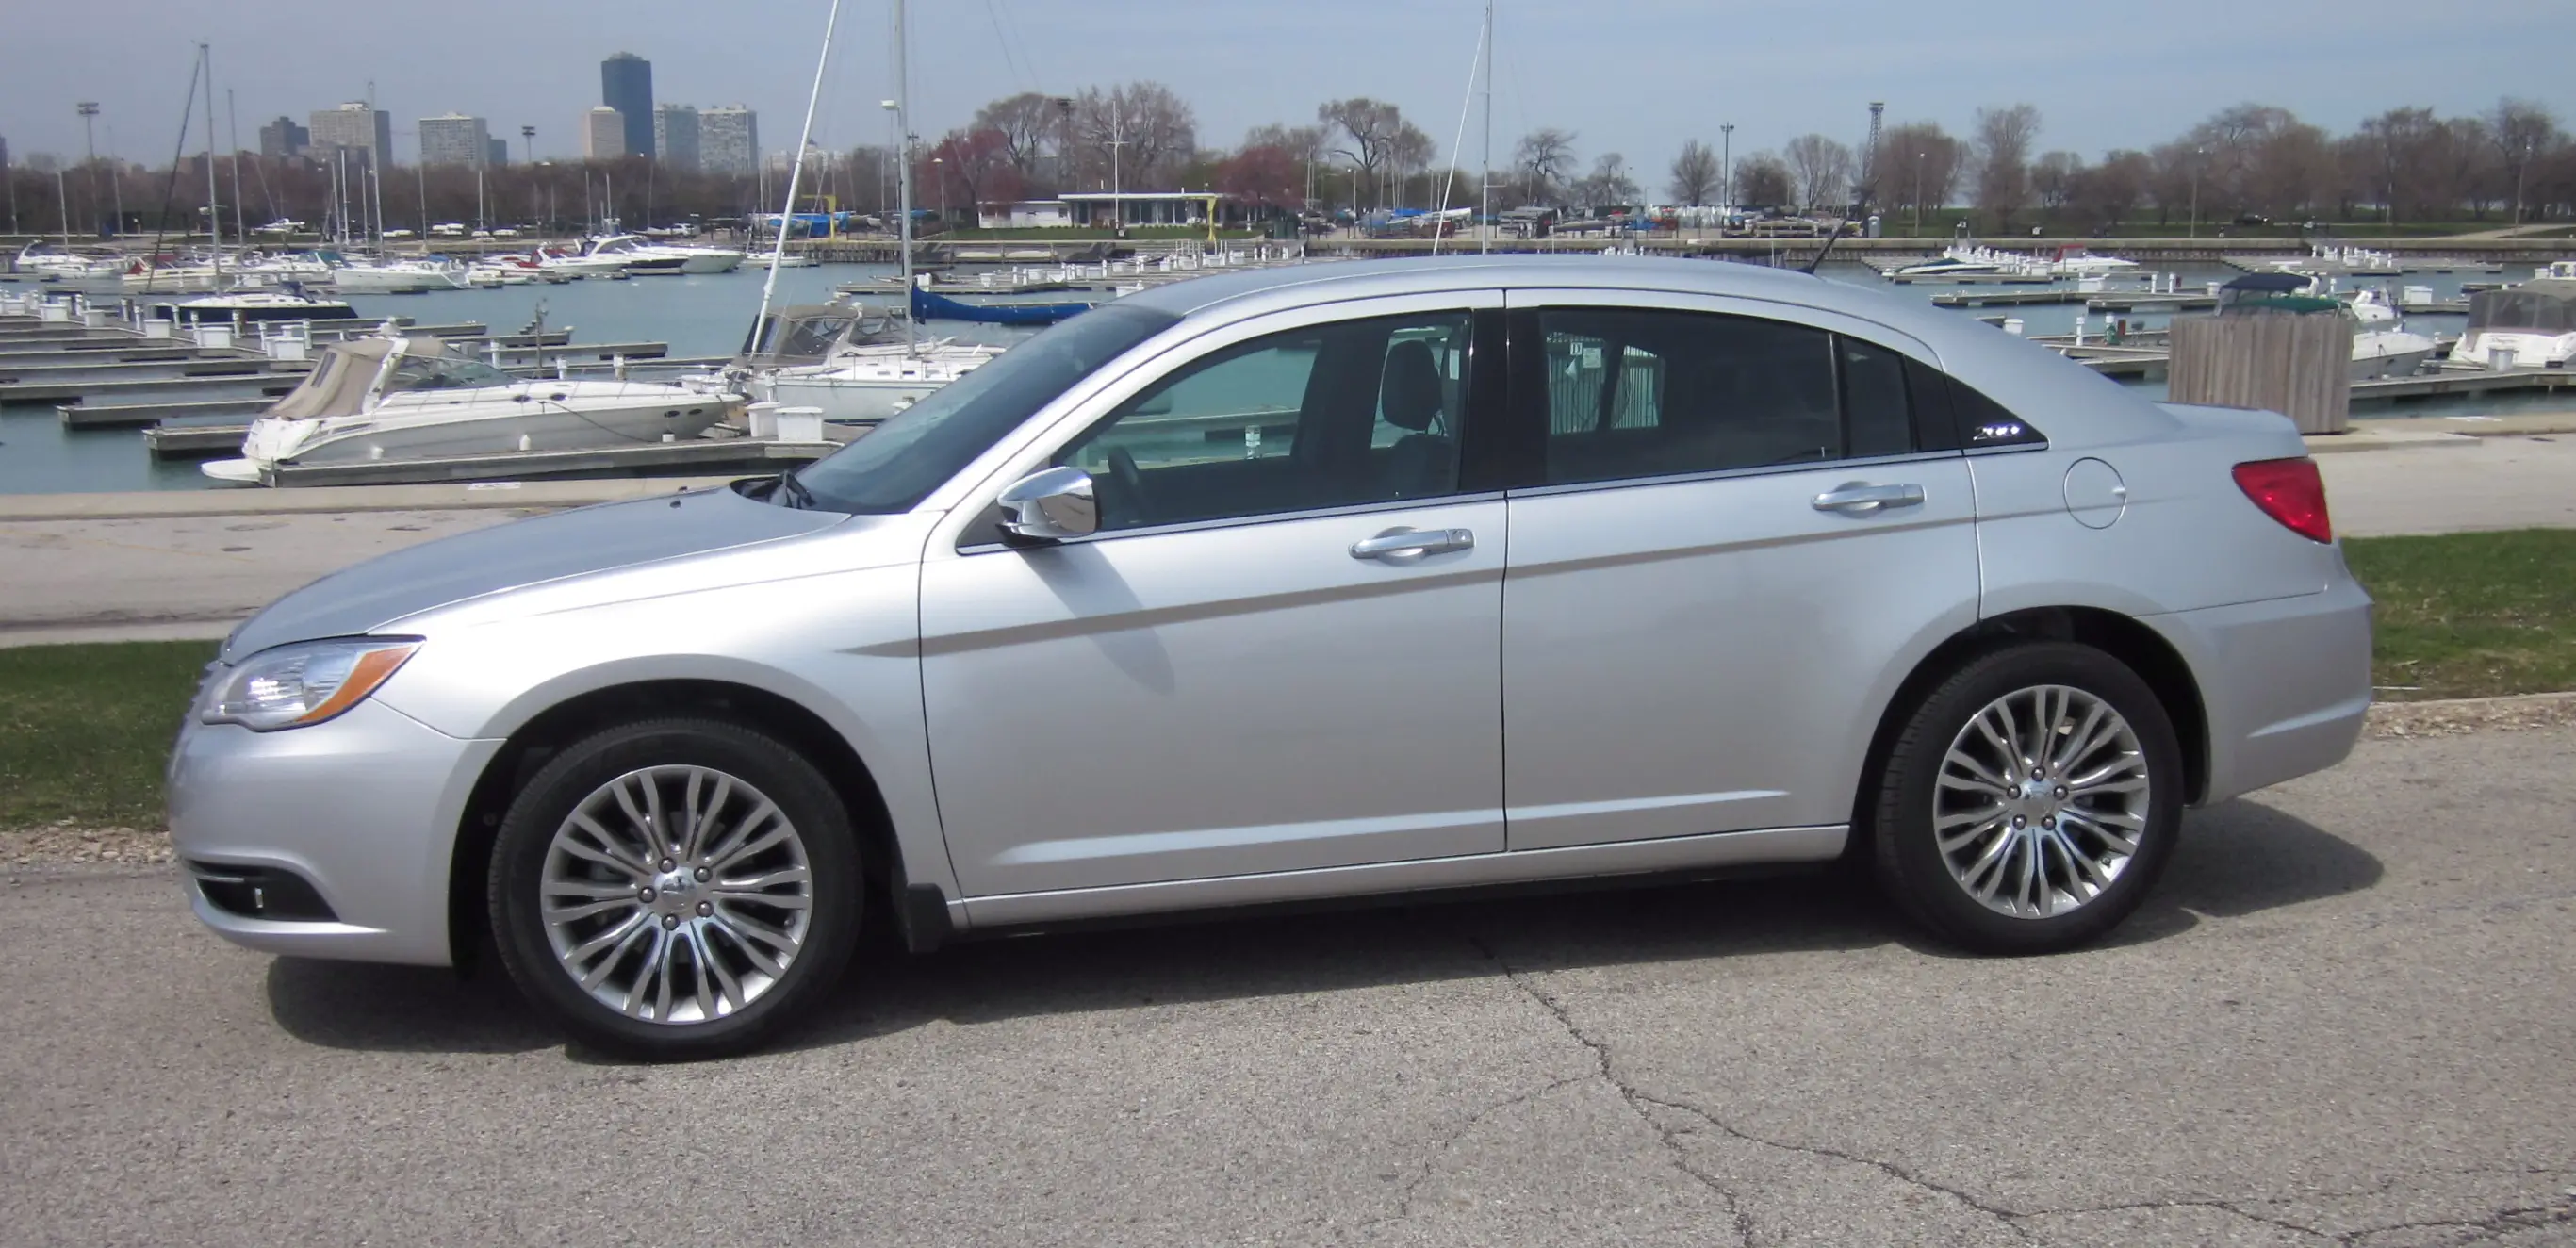 200 Chrysler 2011